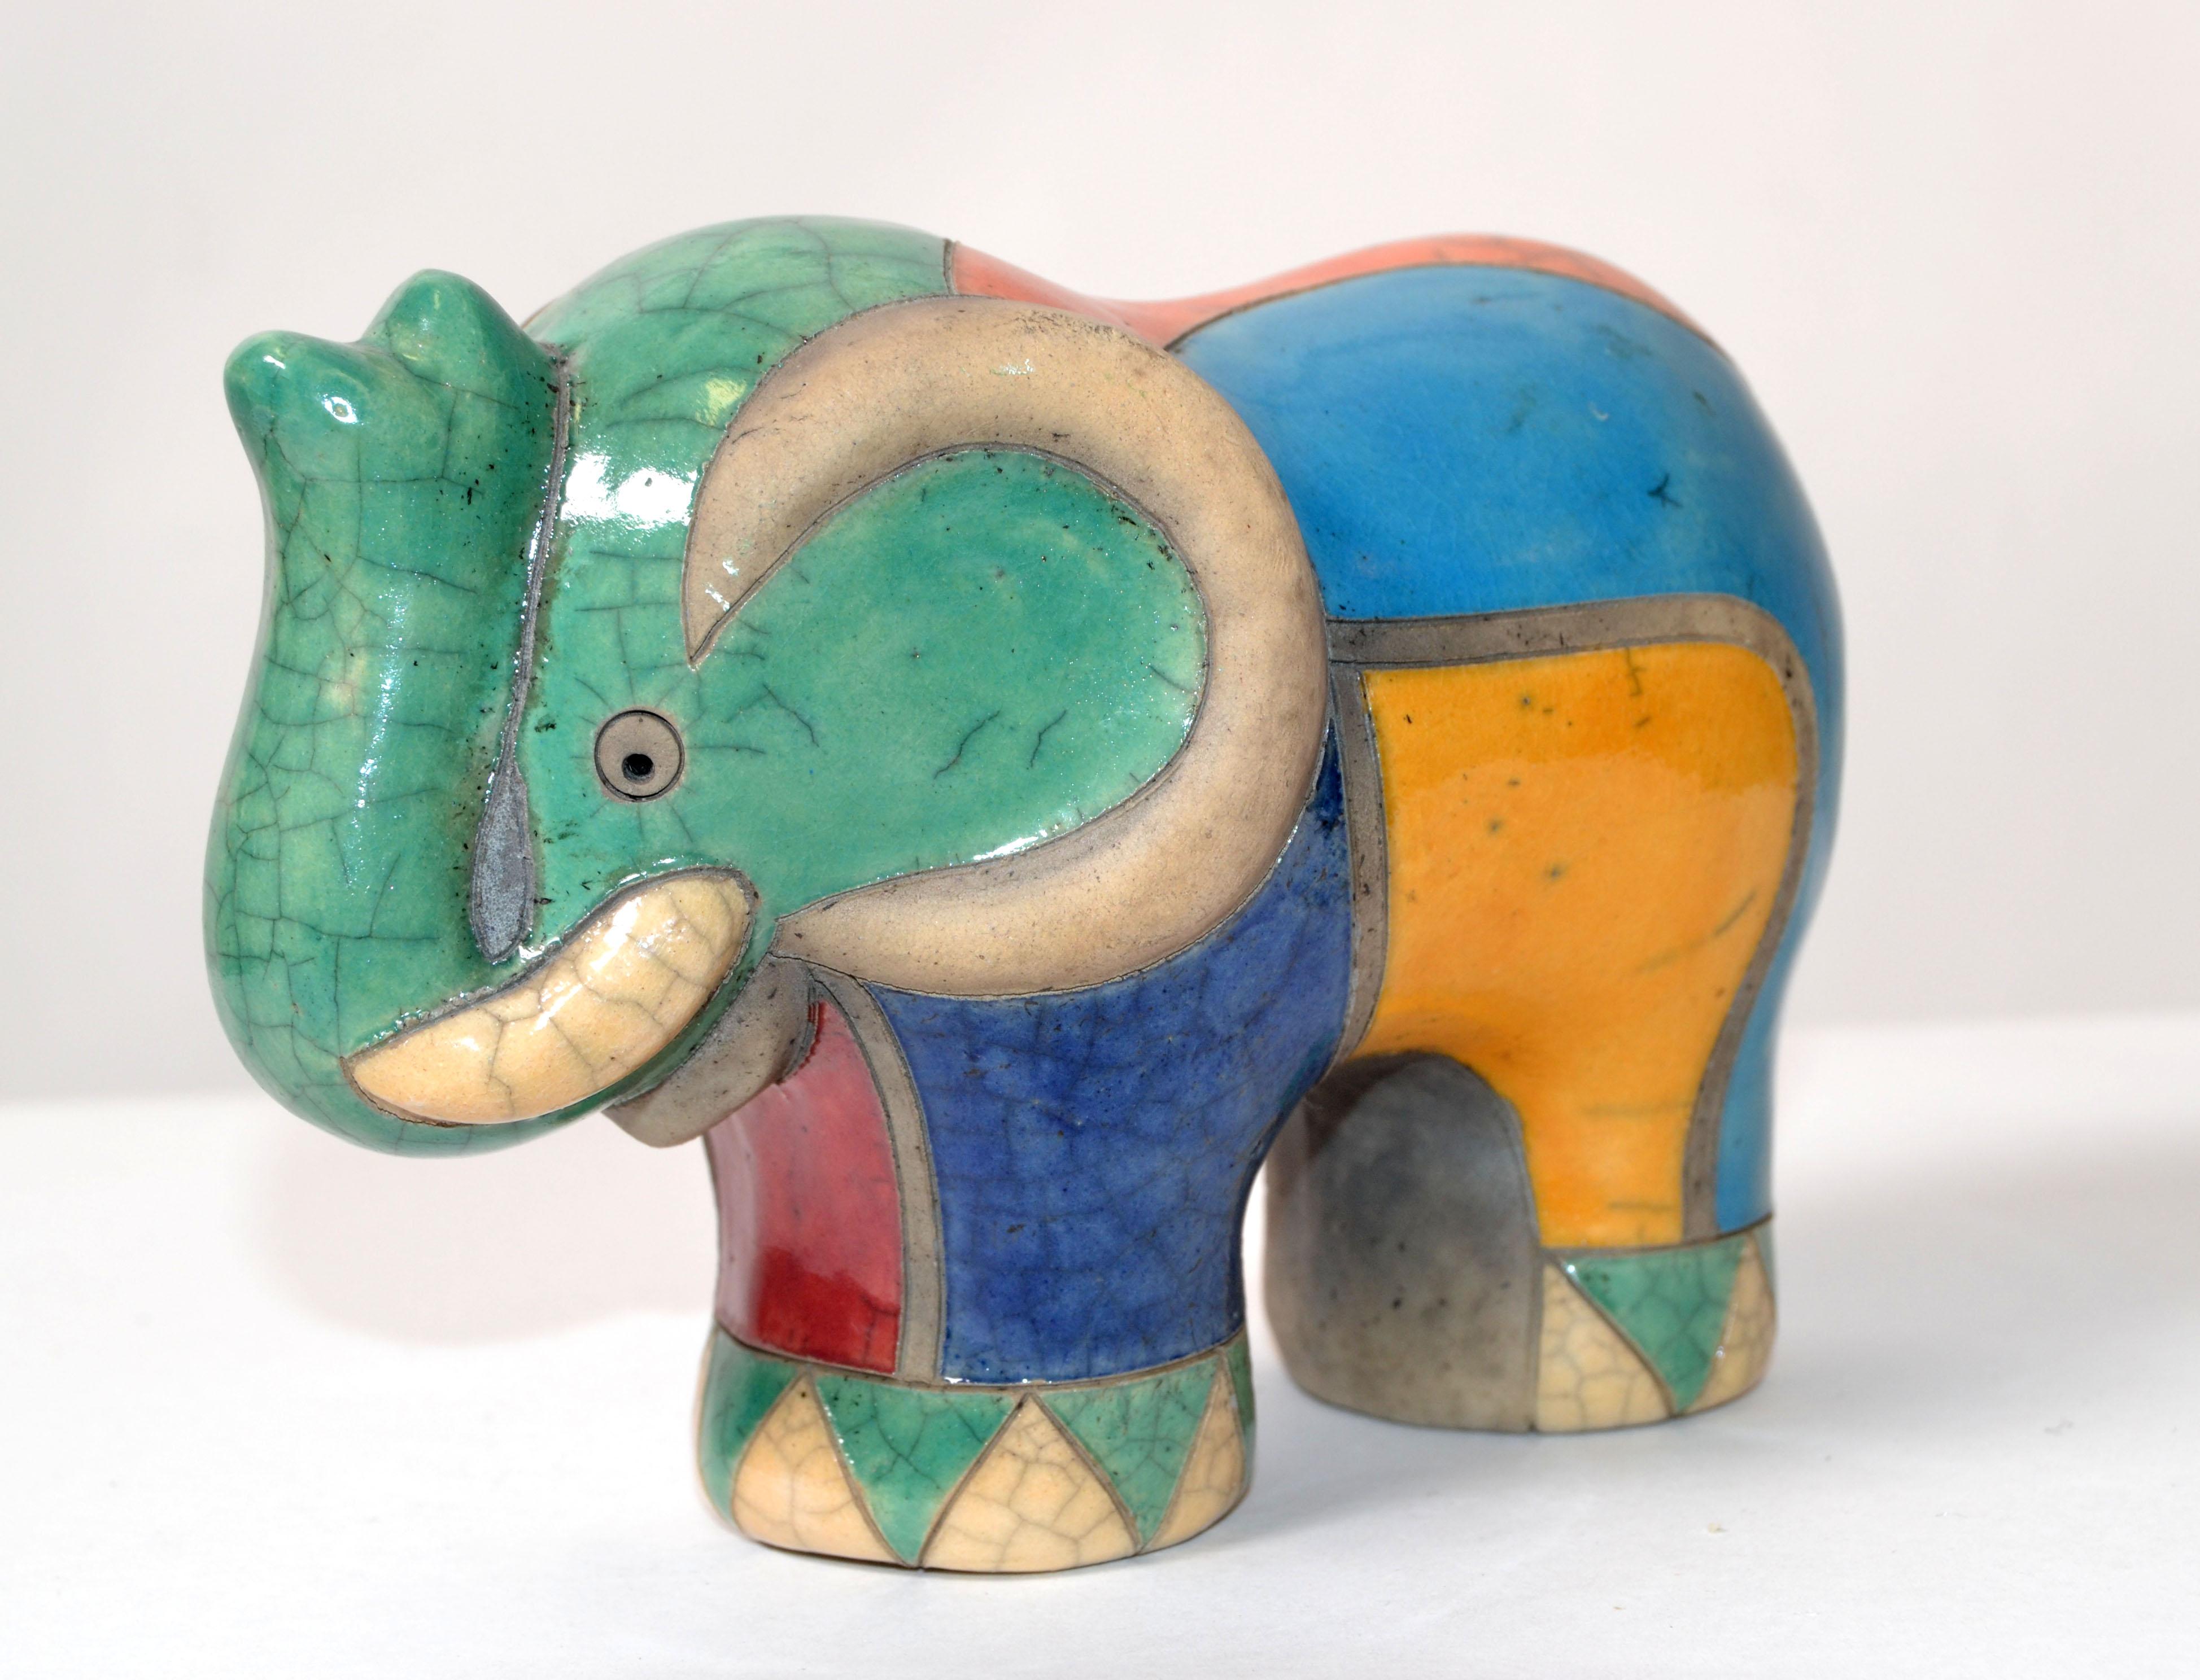 Luca CL Marqué sculpture éléphant en céramique colorée Mid-Century Modern Italy 1970.
Marqué à la base. CL Luca.
Sculpture animale magnifiquement réalisée à la main.